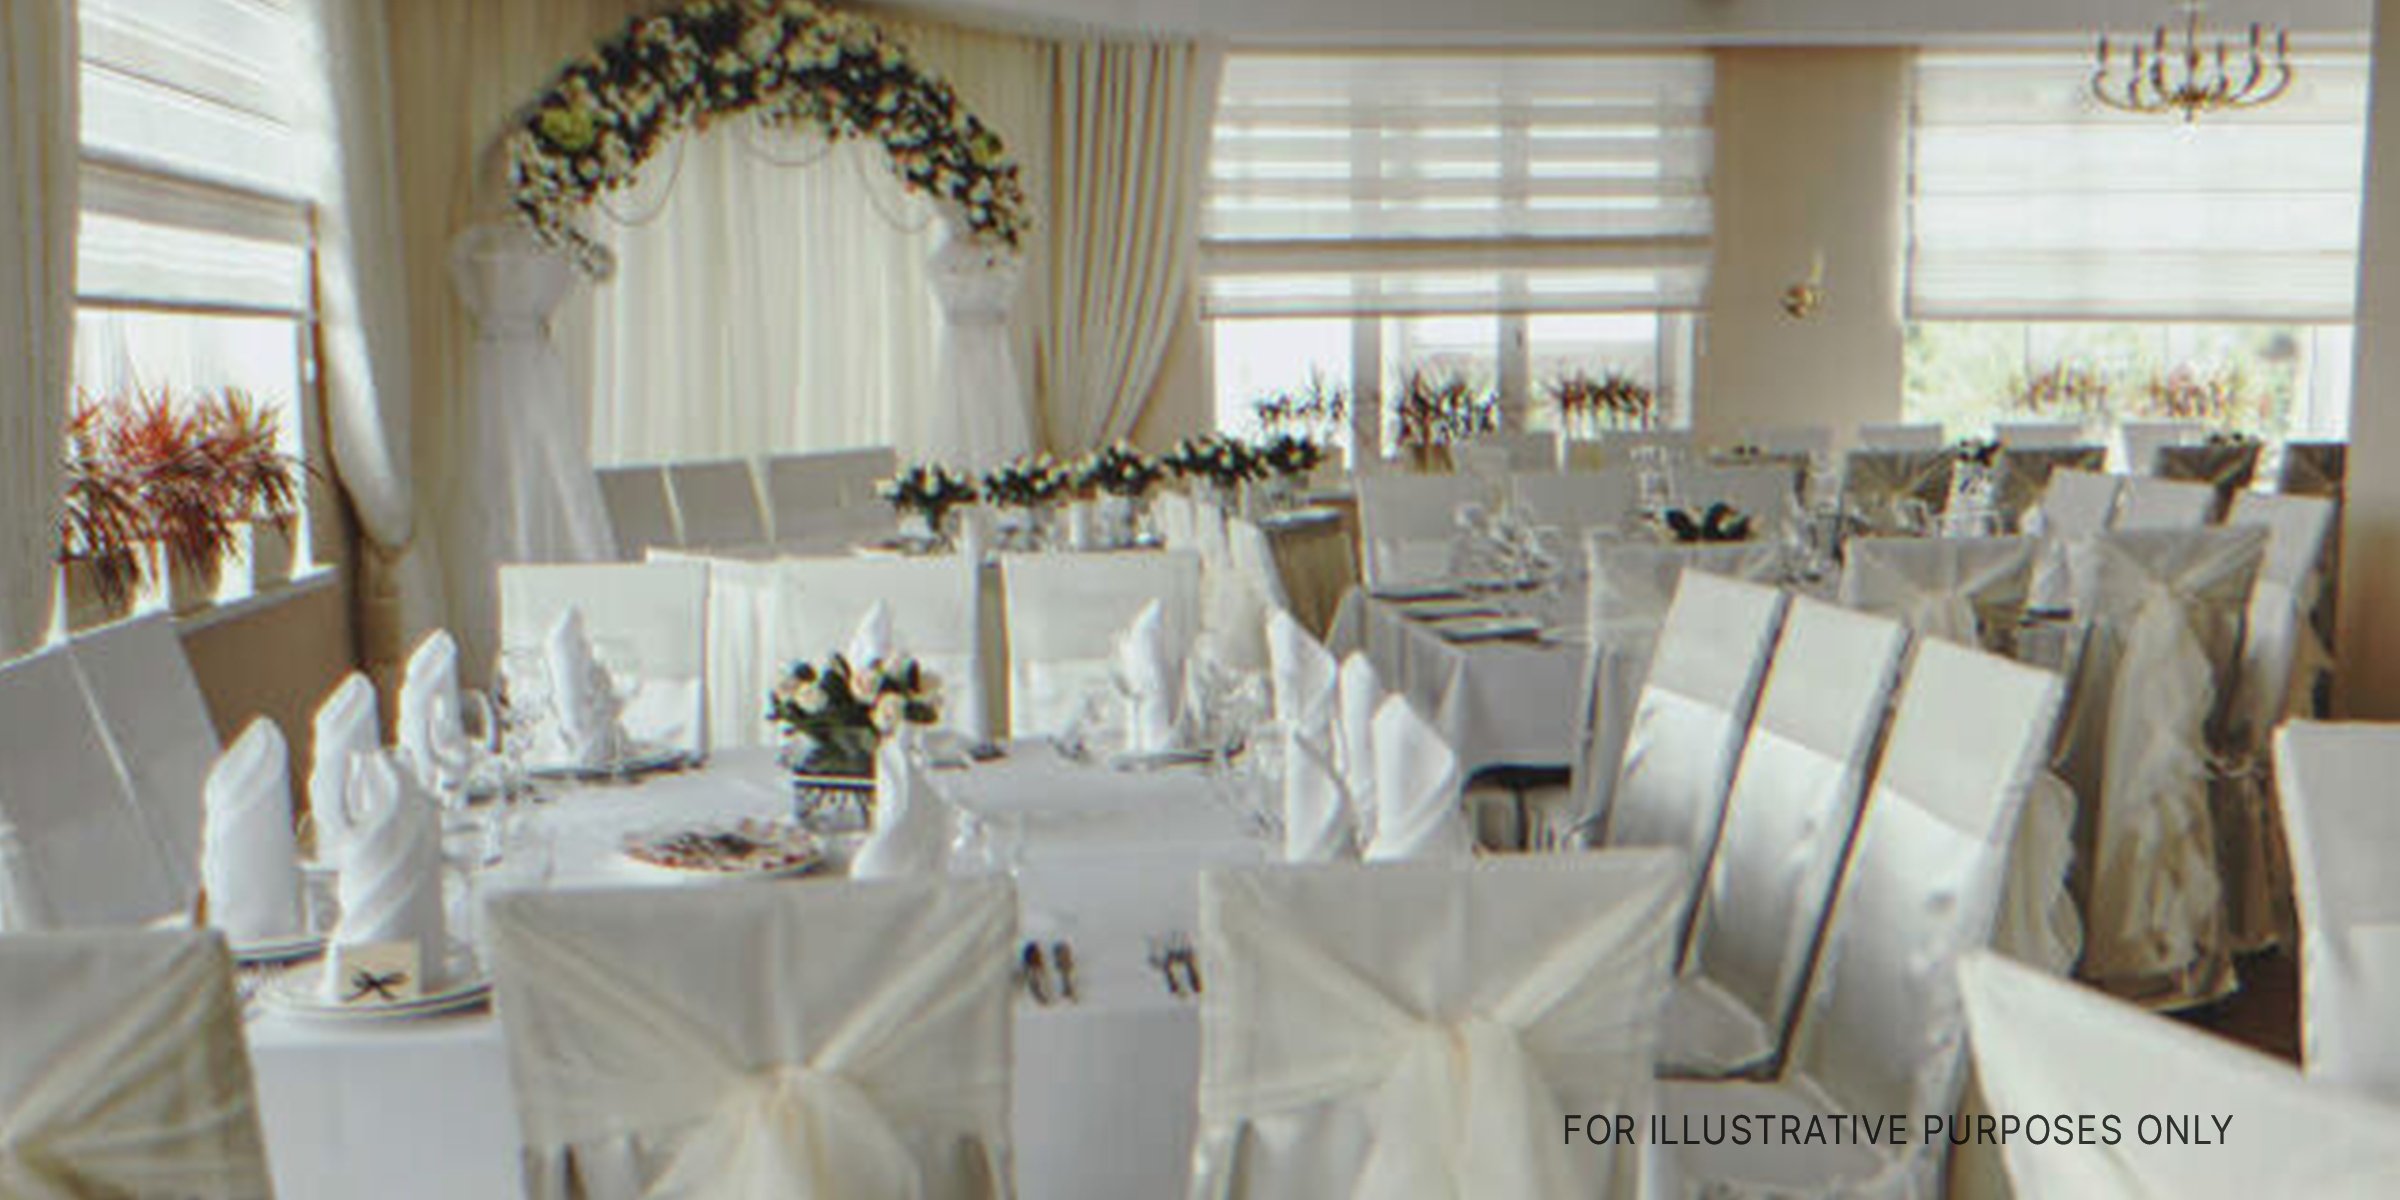 A Wedding Hall. | Source: Shutterstock